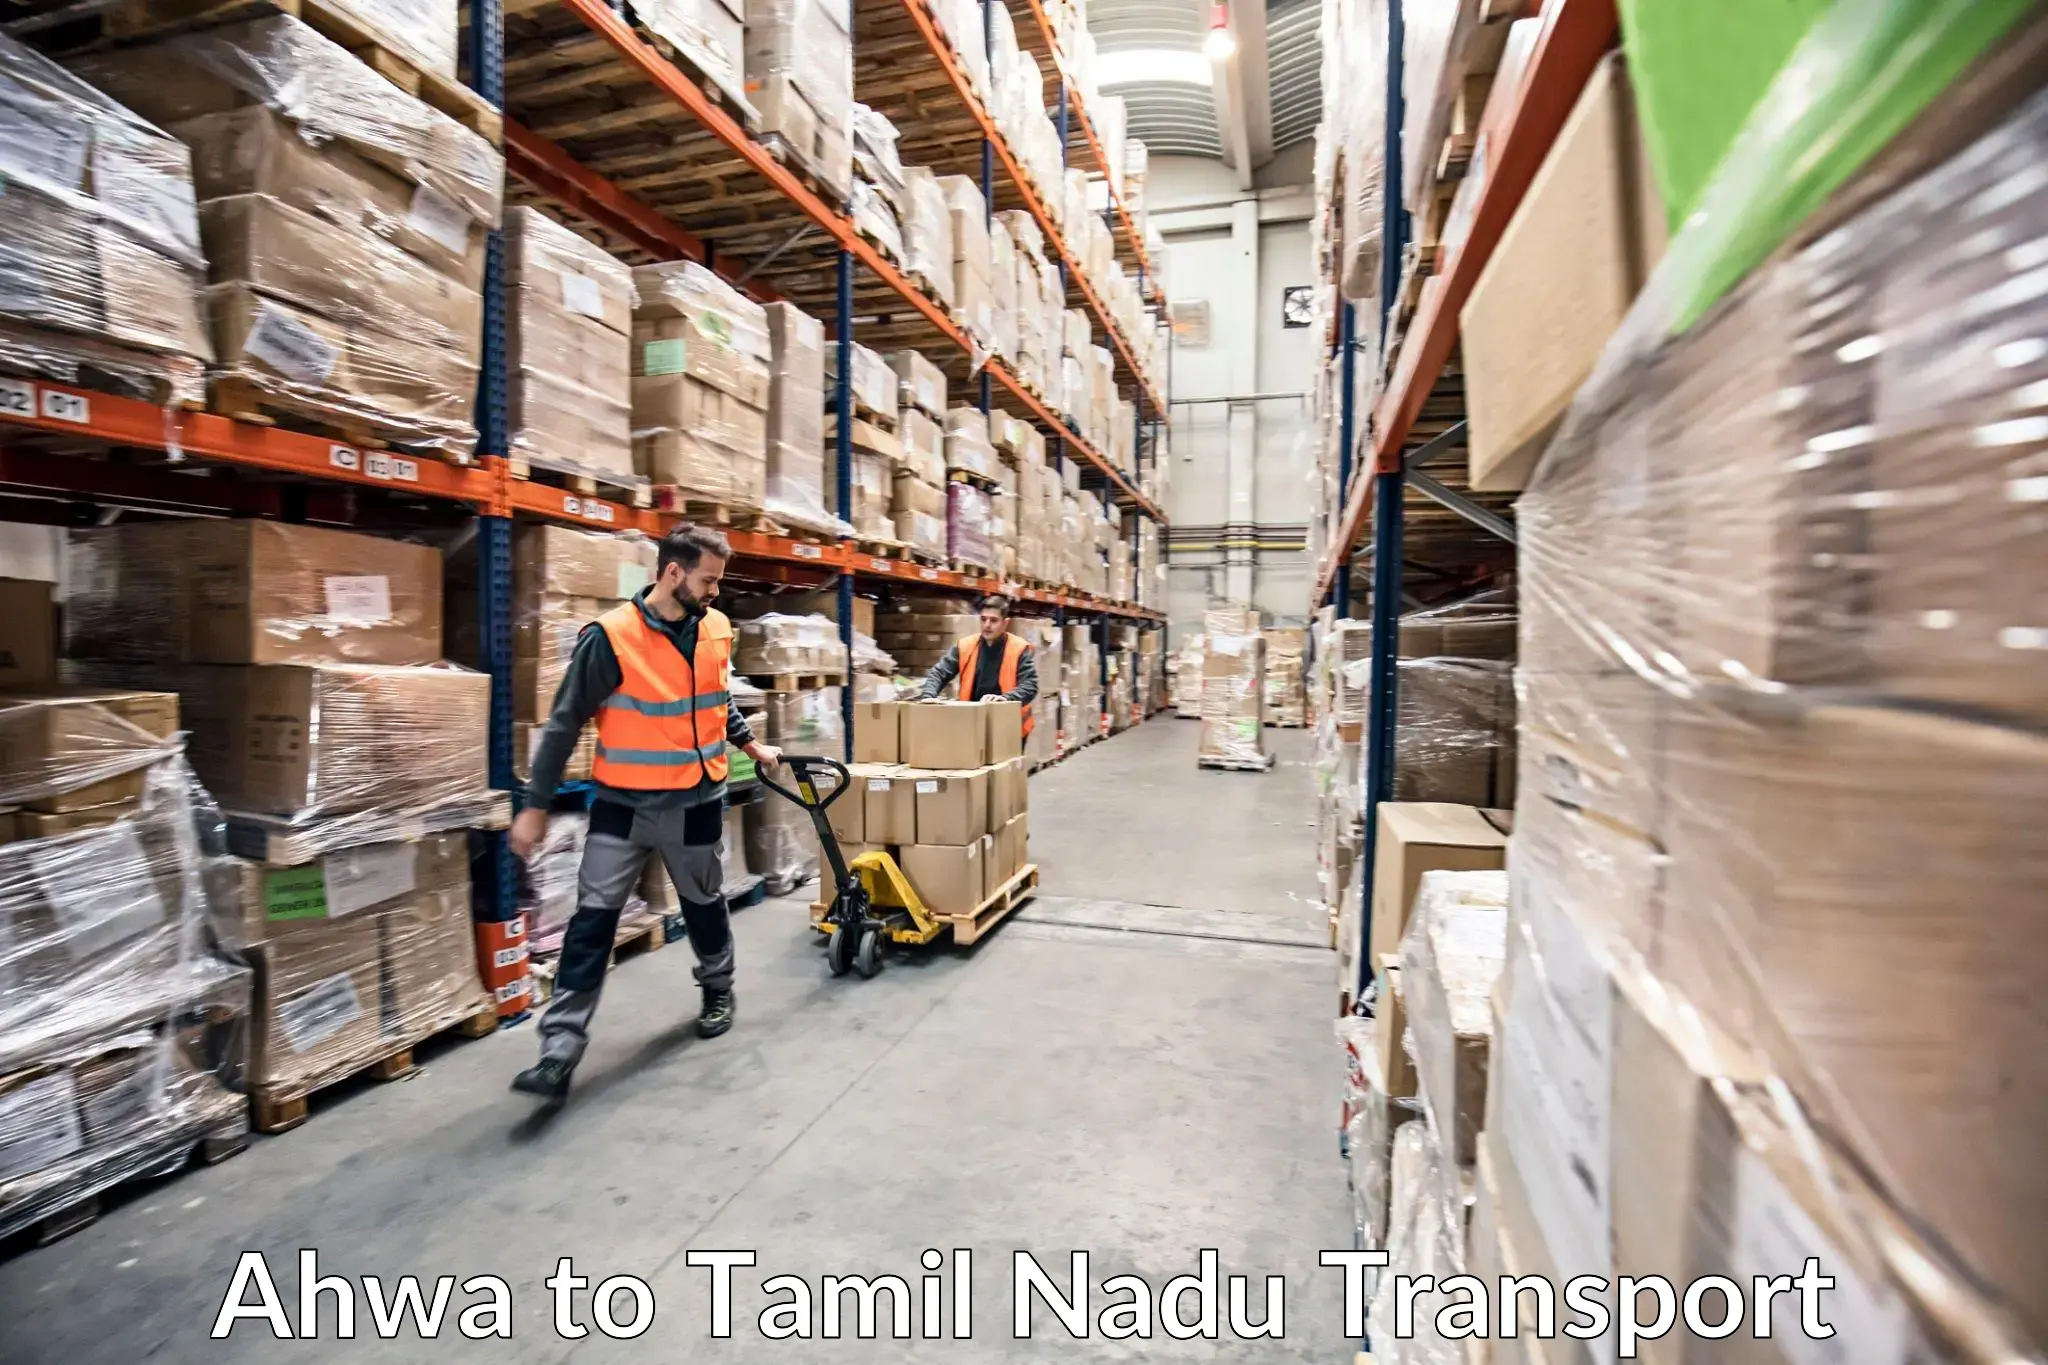 Shipping partner Ahwa to Tamil Nadu